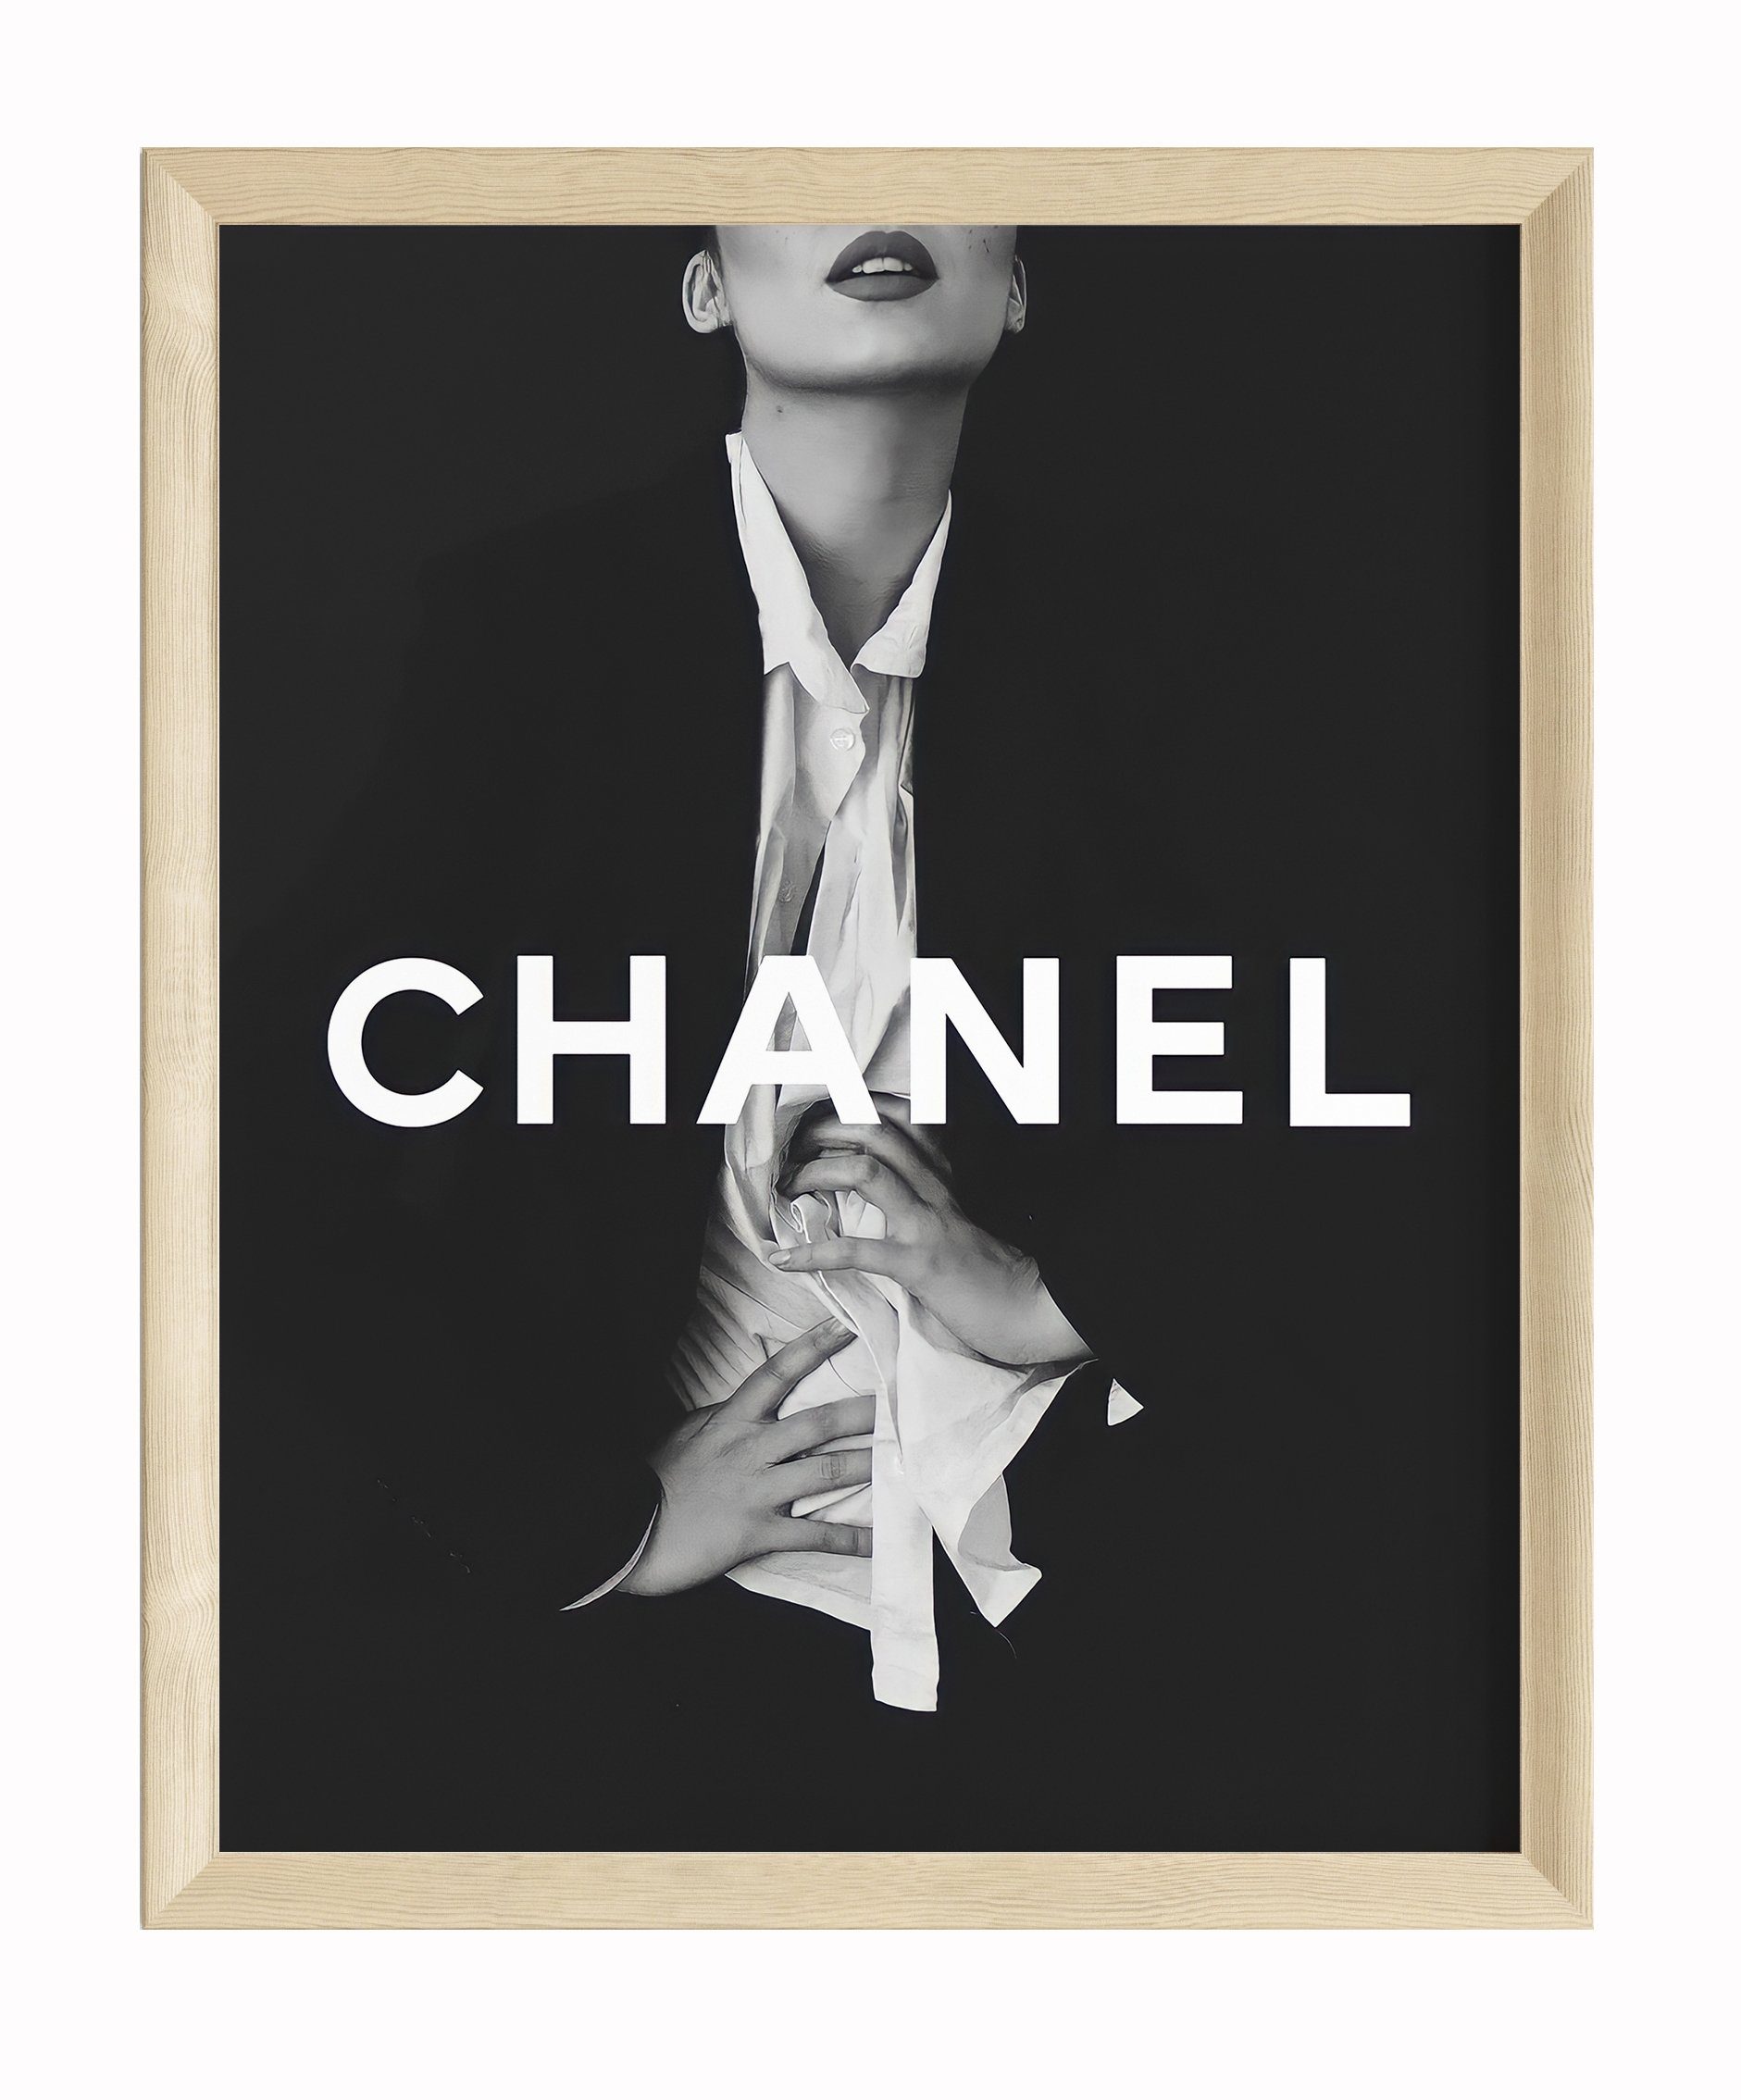 JUSTGOODMOOD Poster Premium ® Chanel Poster · ohne Rahmen, Poster in verschiedenen Größen verfügbar